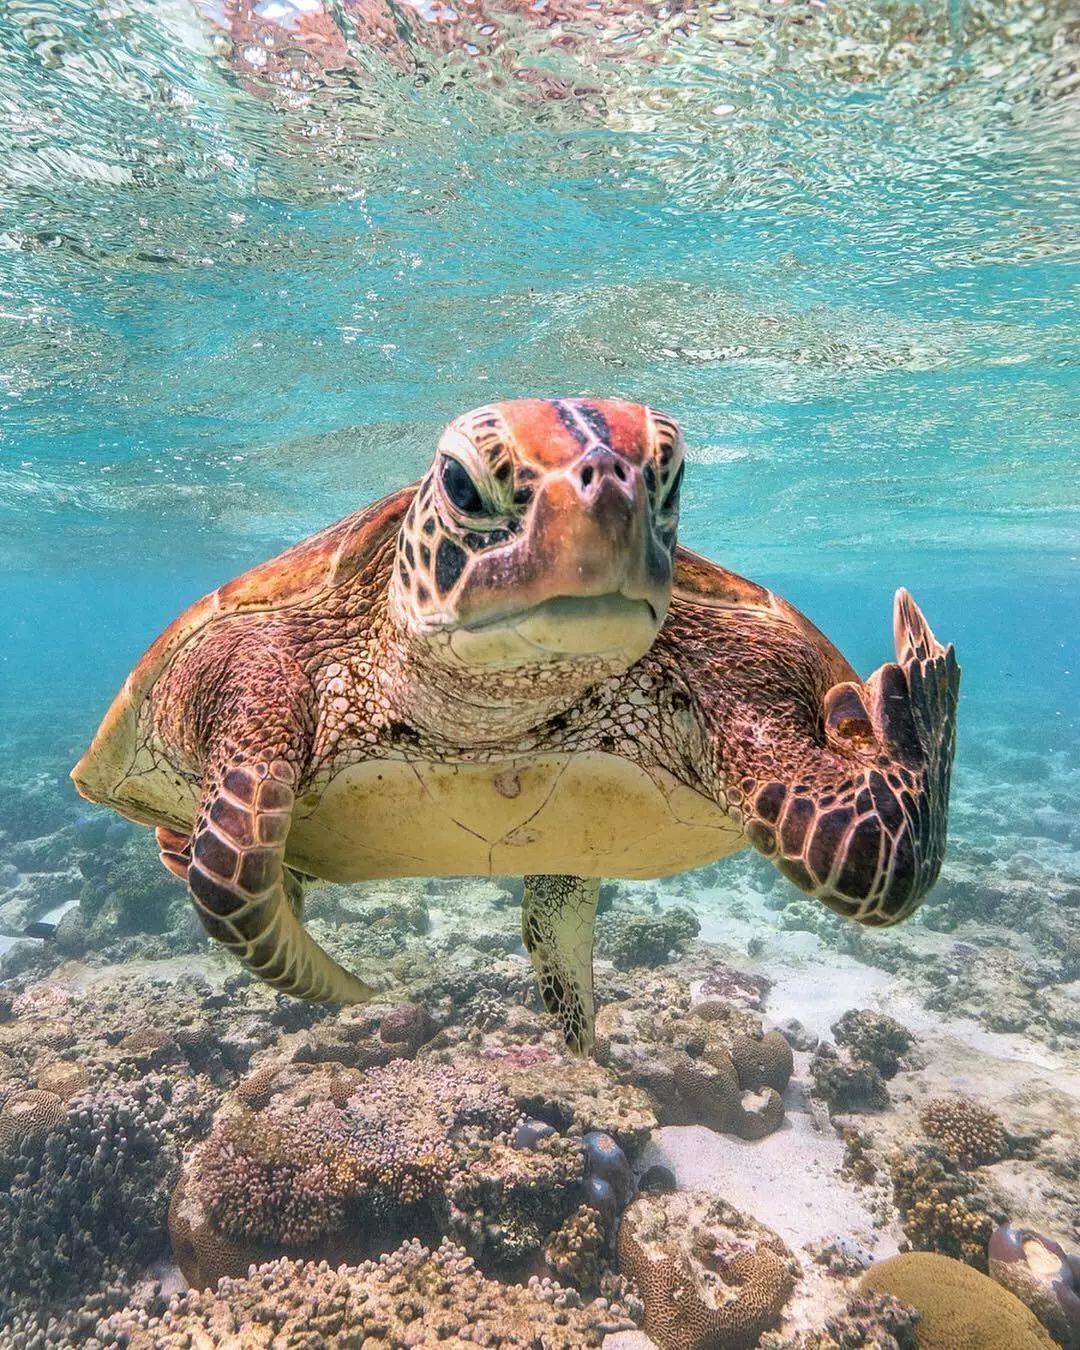 一只隐藏在珊瑚湾海藻中的豹鲨 露出憨厚的微笑 海龟不高兴   mark